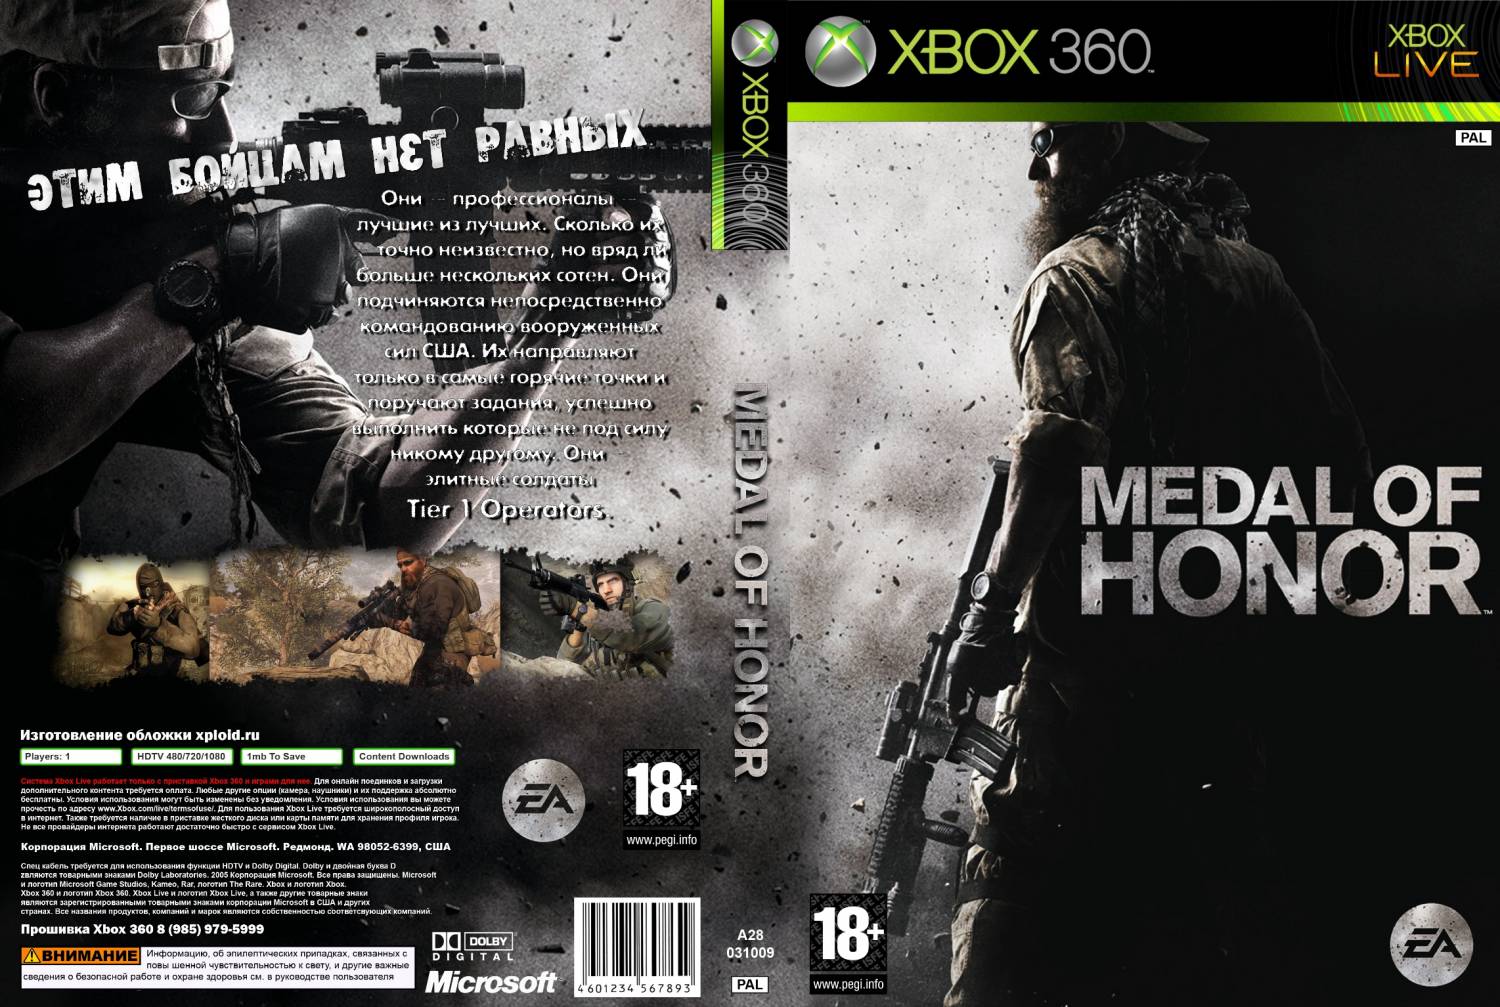 Игры на xbox 360 язык. Medal of Honor Xbox 360 обложка. Medal of Honor 2010 обложка. Медаль оф хонор на Икс бокс 360. Medal of Honor 2010 Xbox 360 обложка.